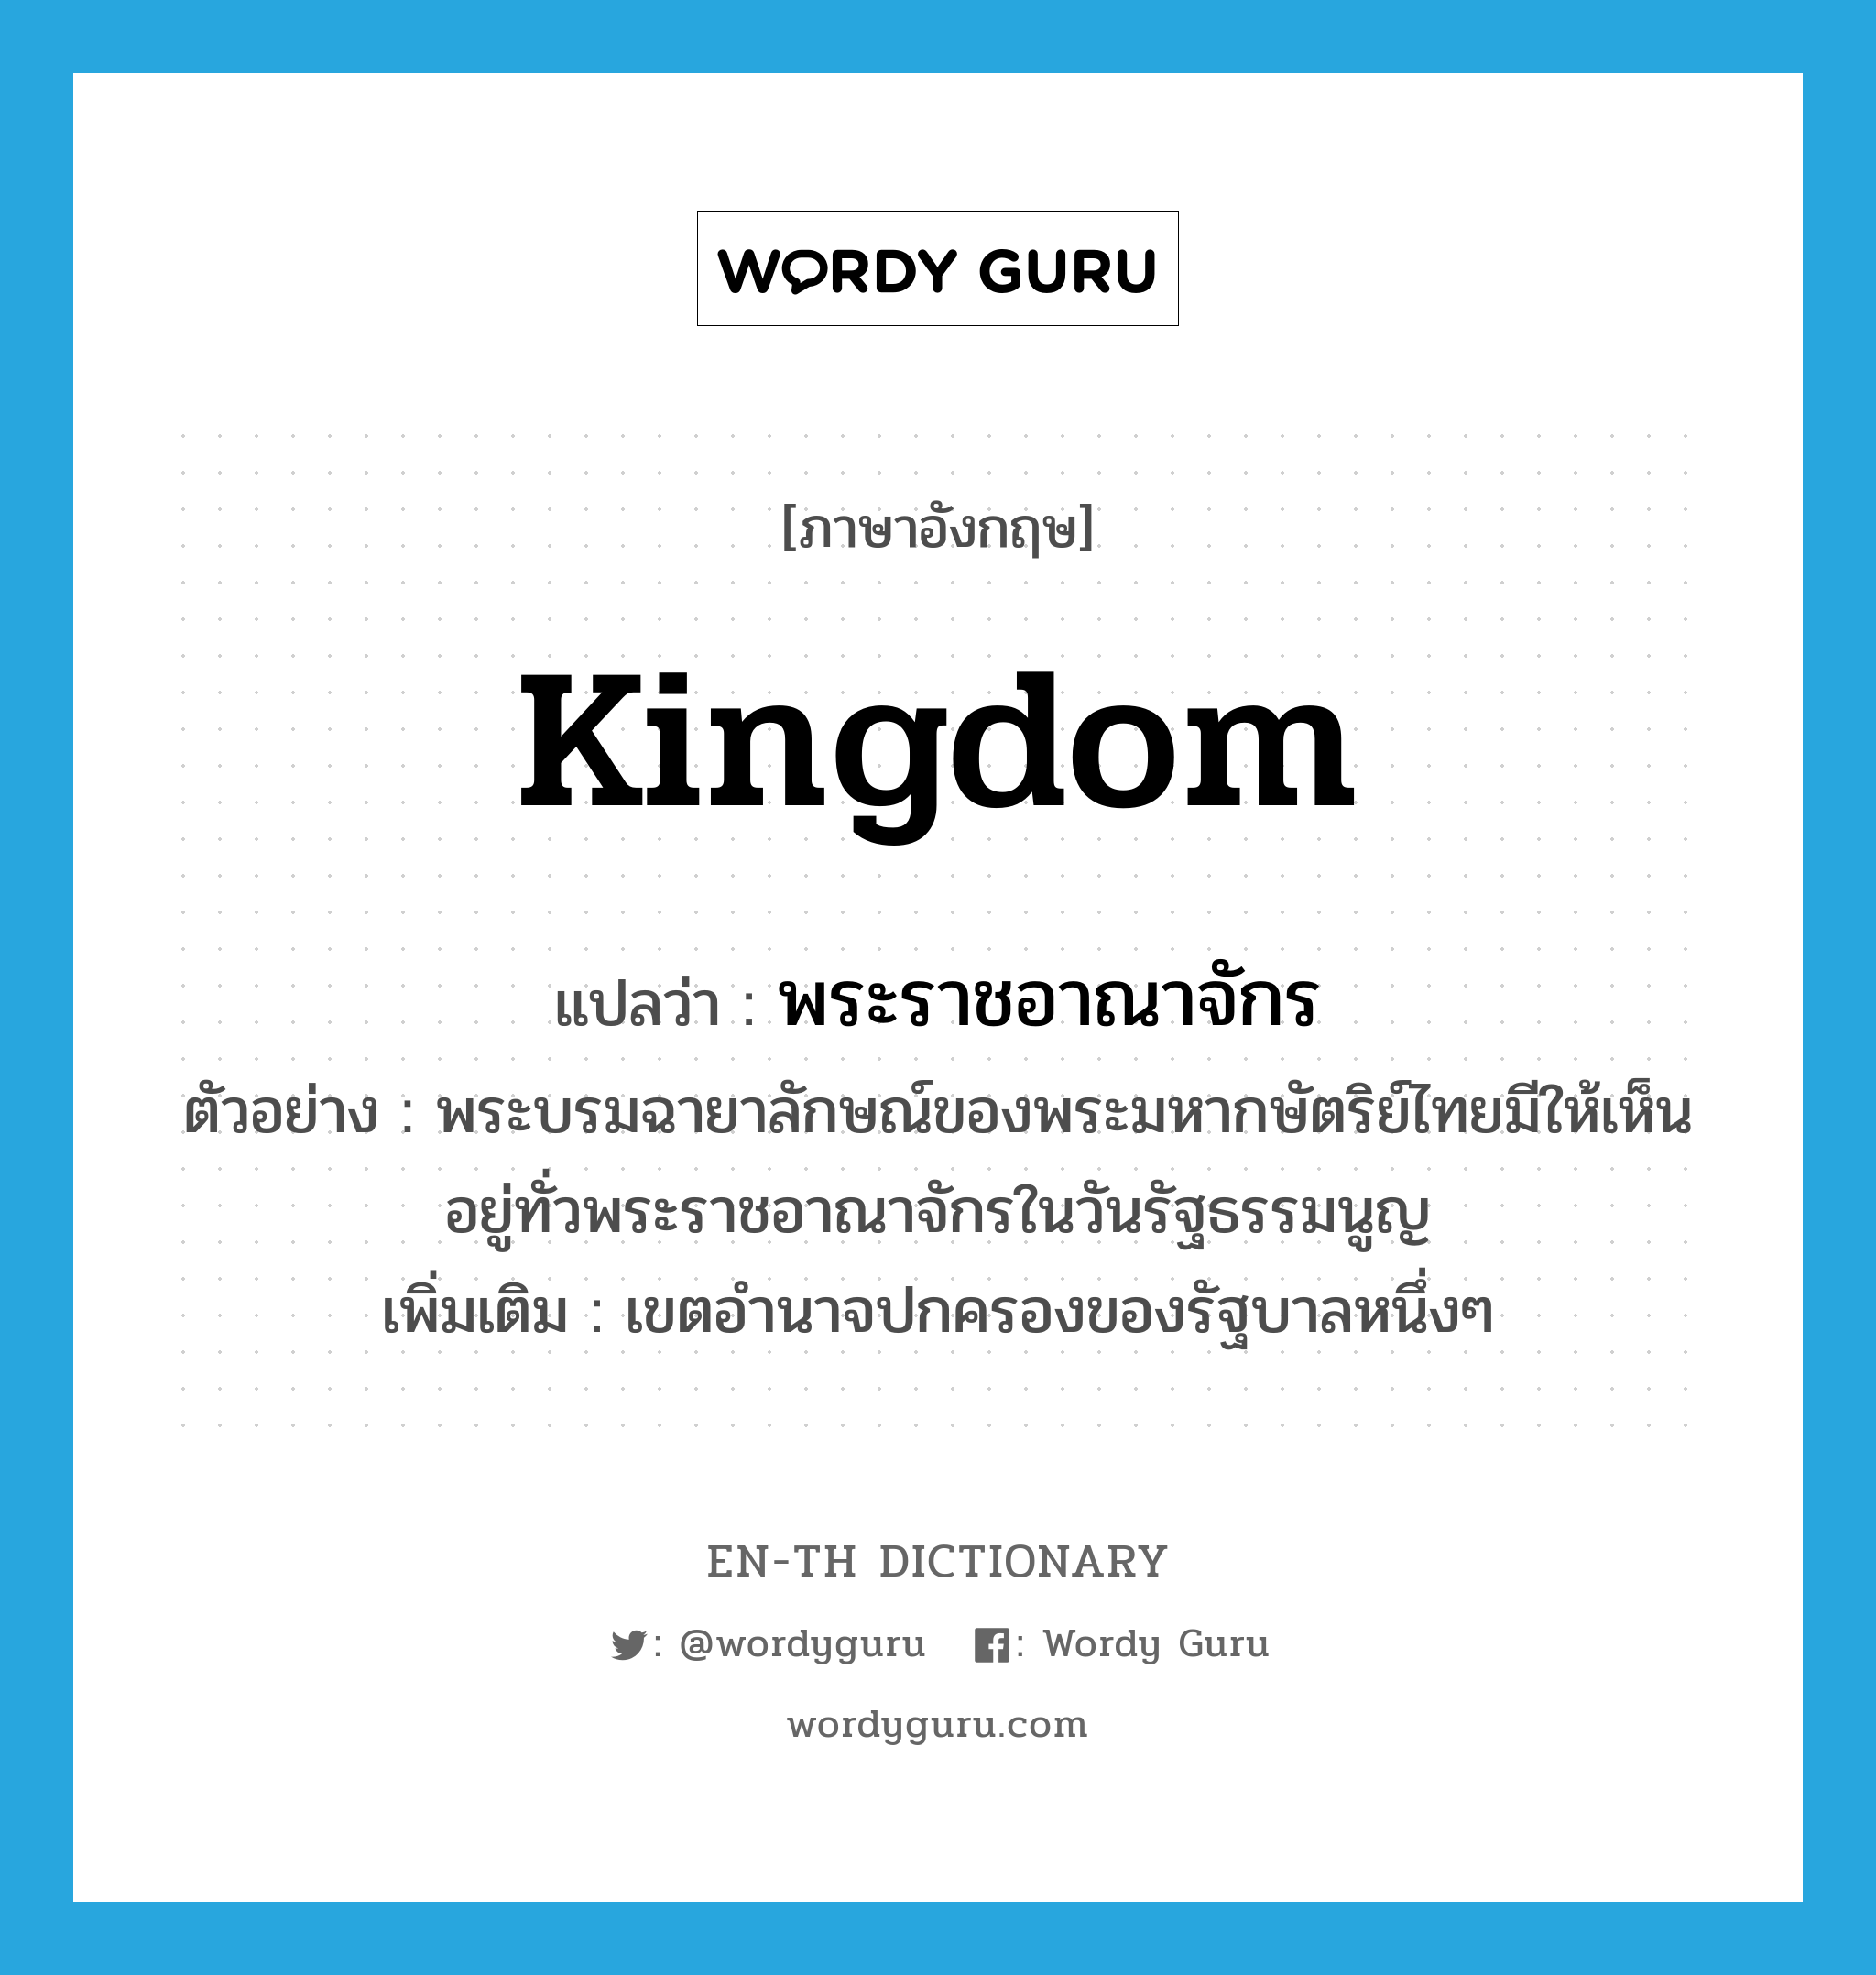 พระราชอาณาจักร ภาษาอังกฤษ?, คำศัพท์ภาษาอังกฤษ พระราชอาณาจักร แปลว่า kingdom ประเภท N ตัวอย่าง พระบรมฉายาลักษณ์ของพระมหากษัตริย์ไทยมีให้เห็นอยู่ทั่วพระราชอาณาจักรในวันรัฐธรรมนูญ เพิ่มเติม เขตอำนาจปกครองของรัฐบาลหนึ่งๆ หมวด N